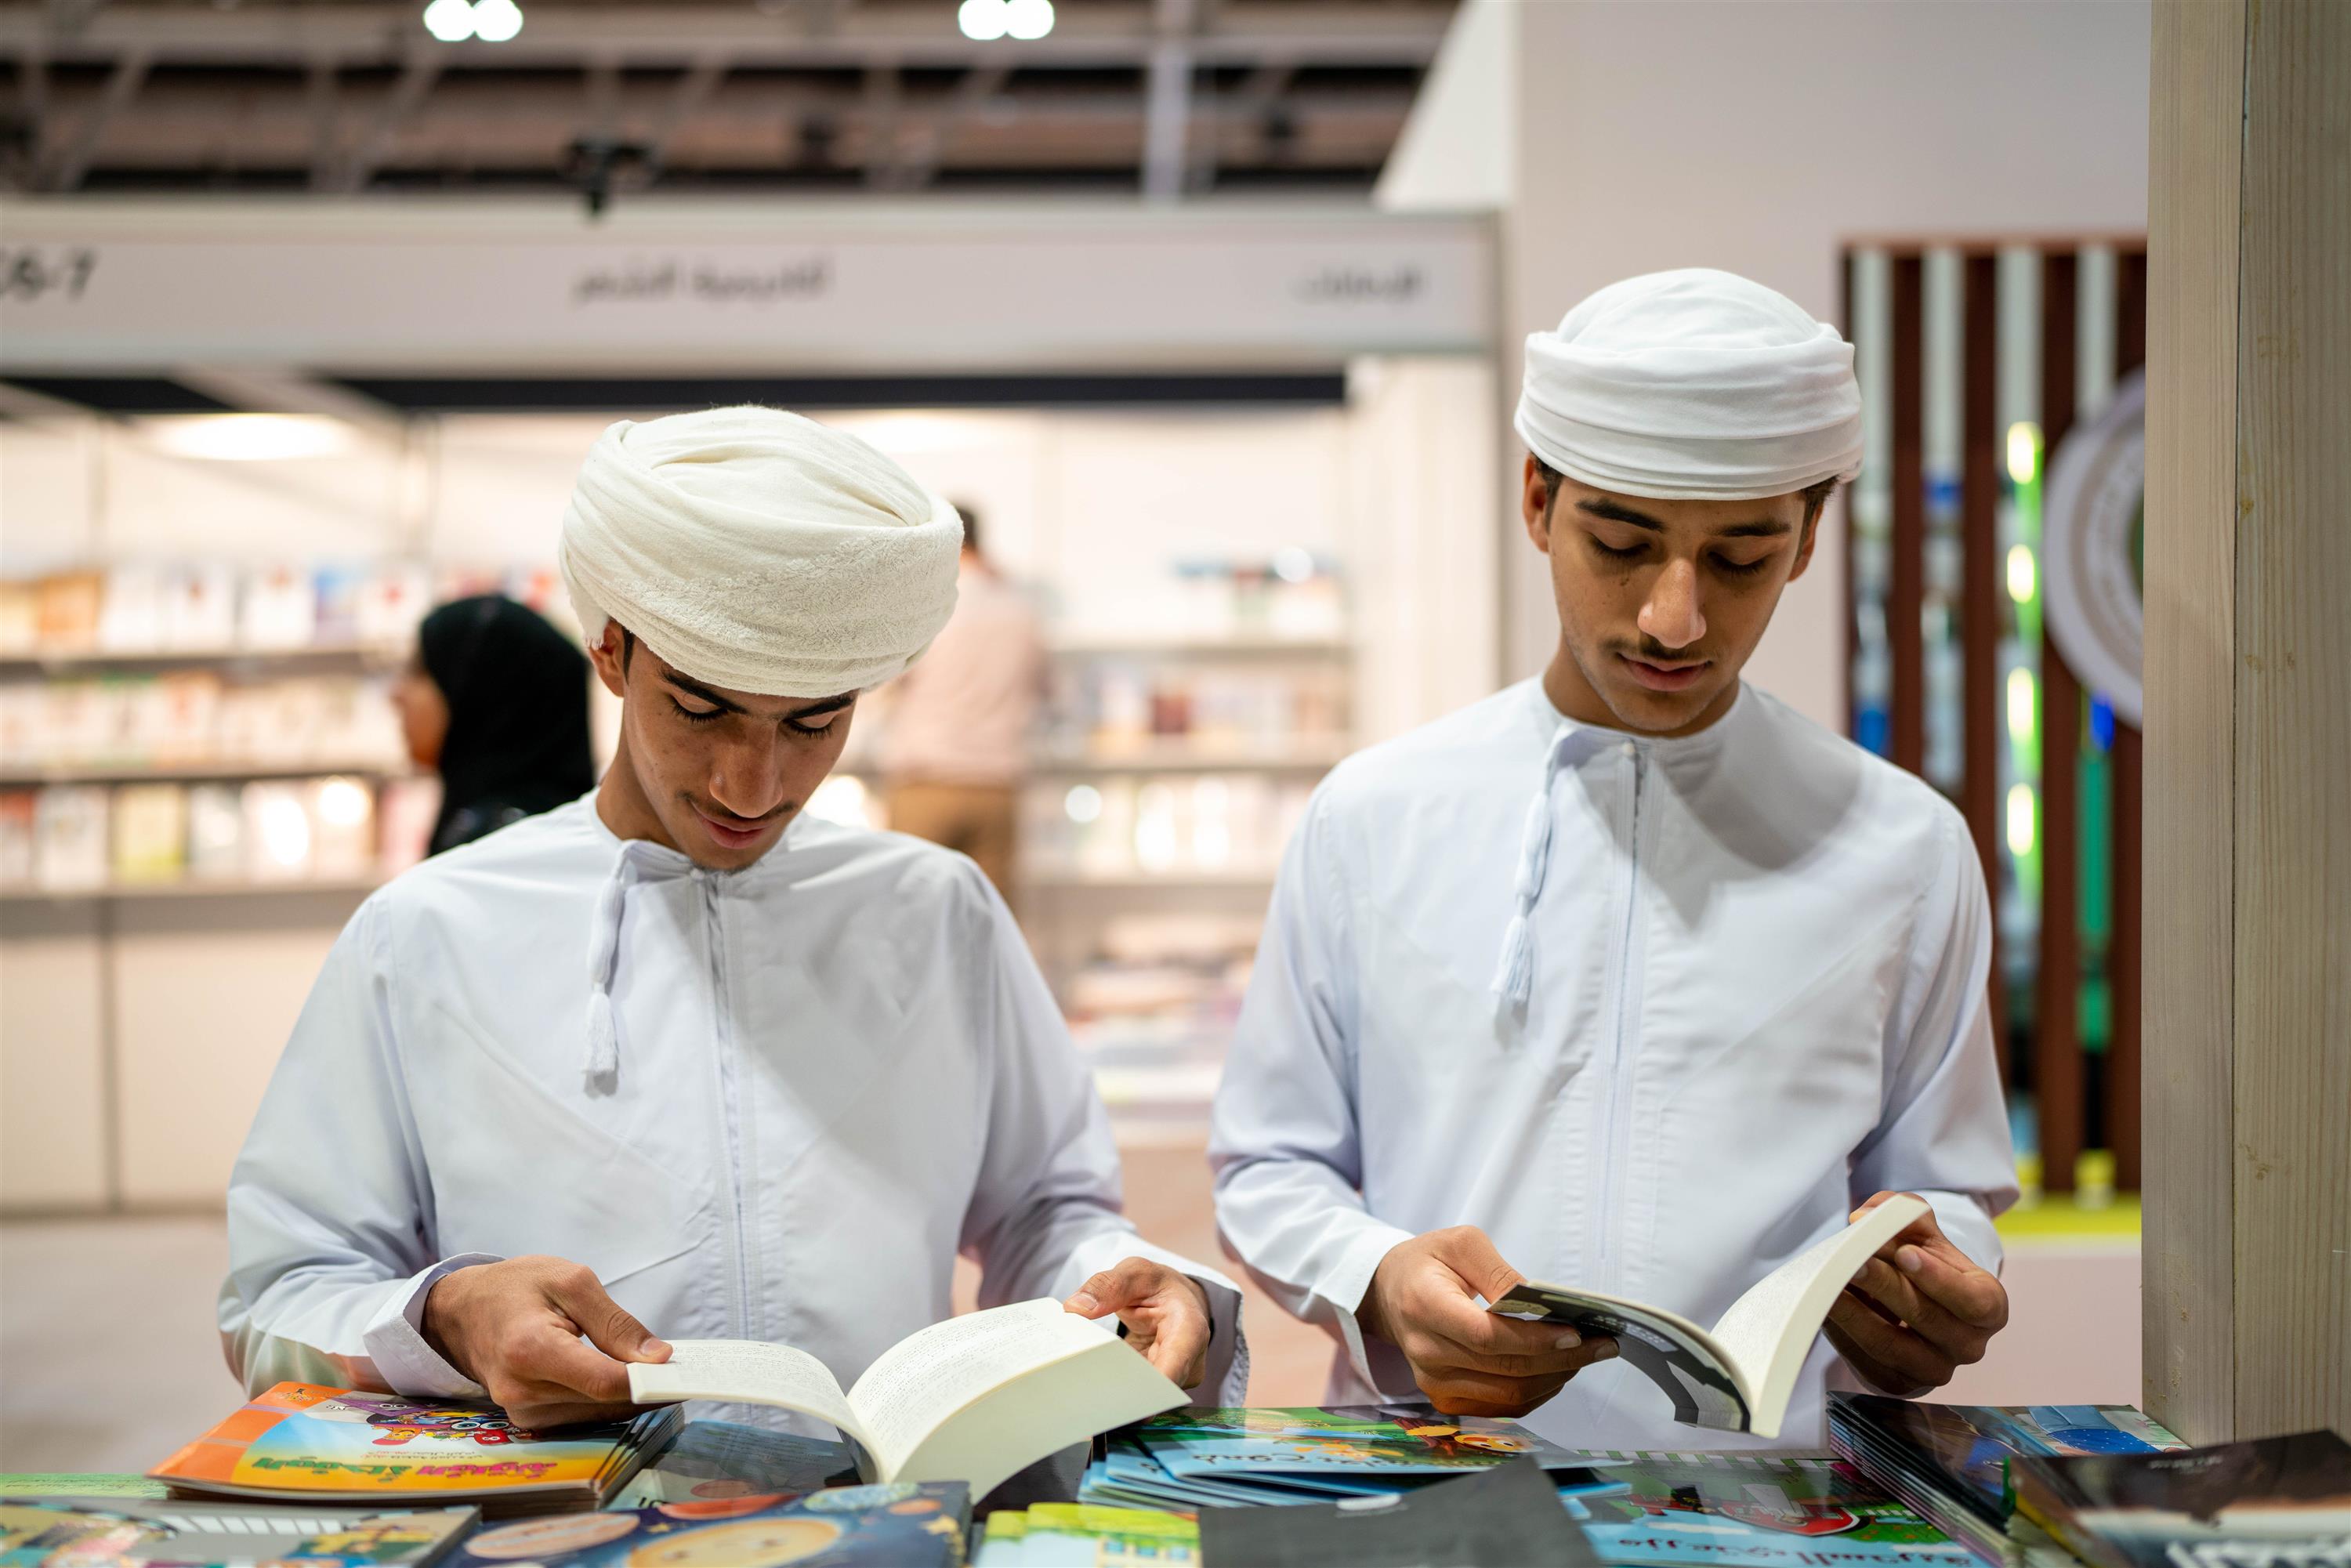 جمعية الناشرين الإماراتيين" تنقل الكتاب الإماراتي إلى القارئ الخليجي في عمان والسعودية